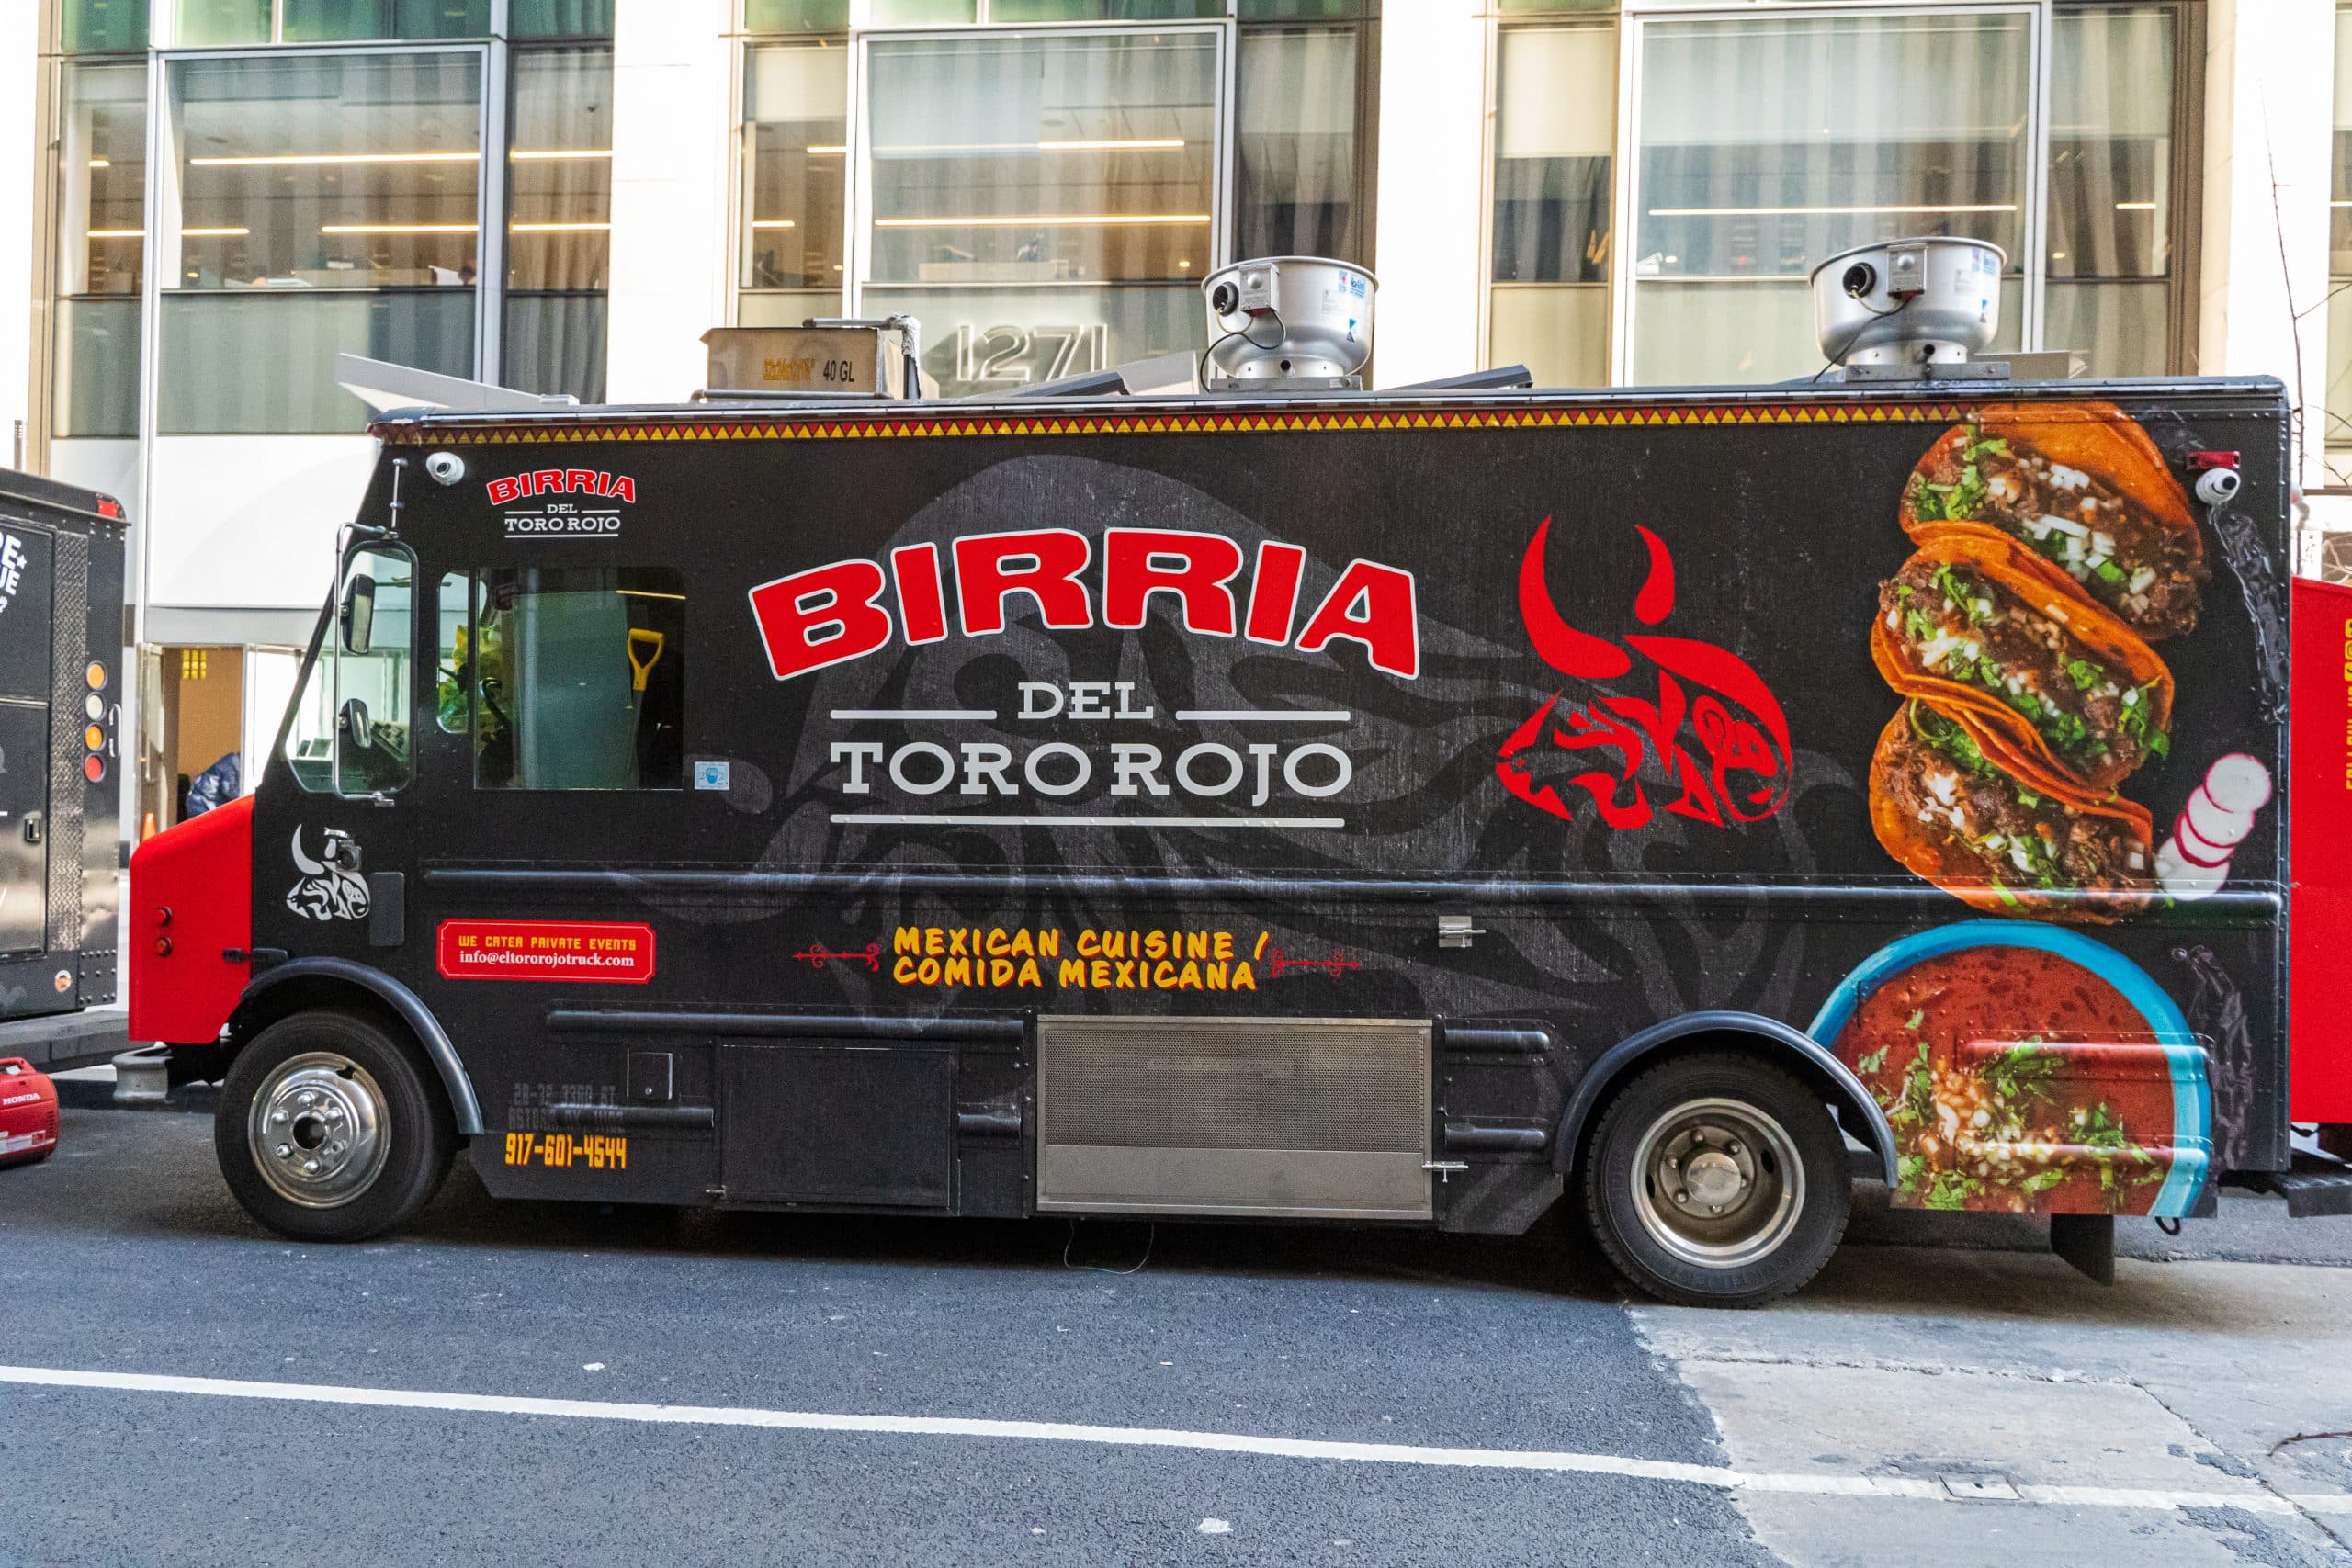 del toro rojo birria taco truck parked in new york